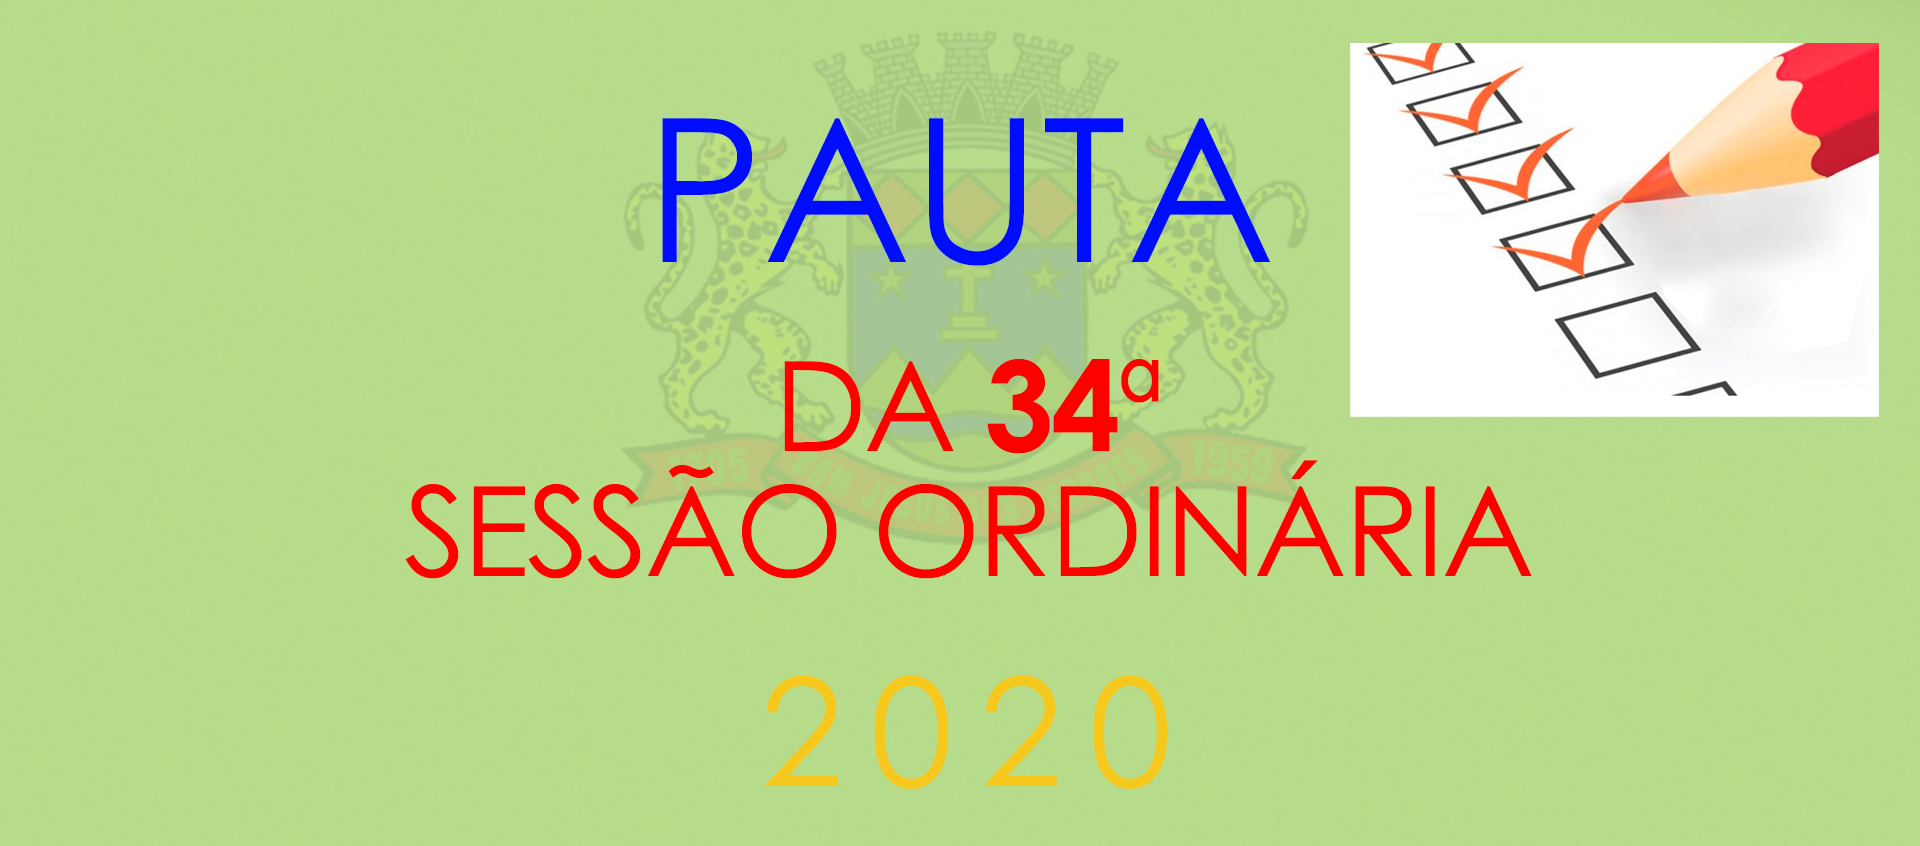 Pauta da 34ª Sessão Ordinária - 2020